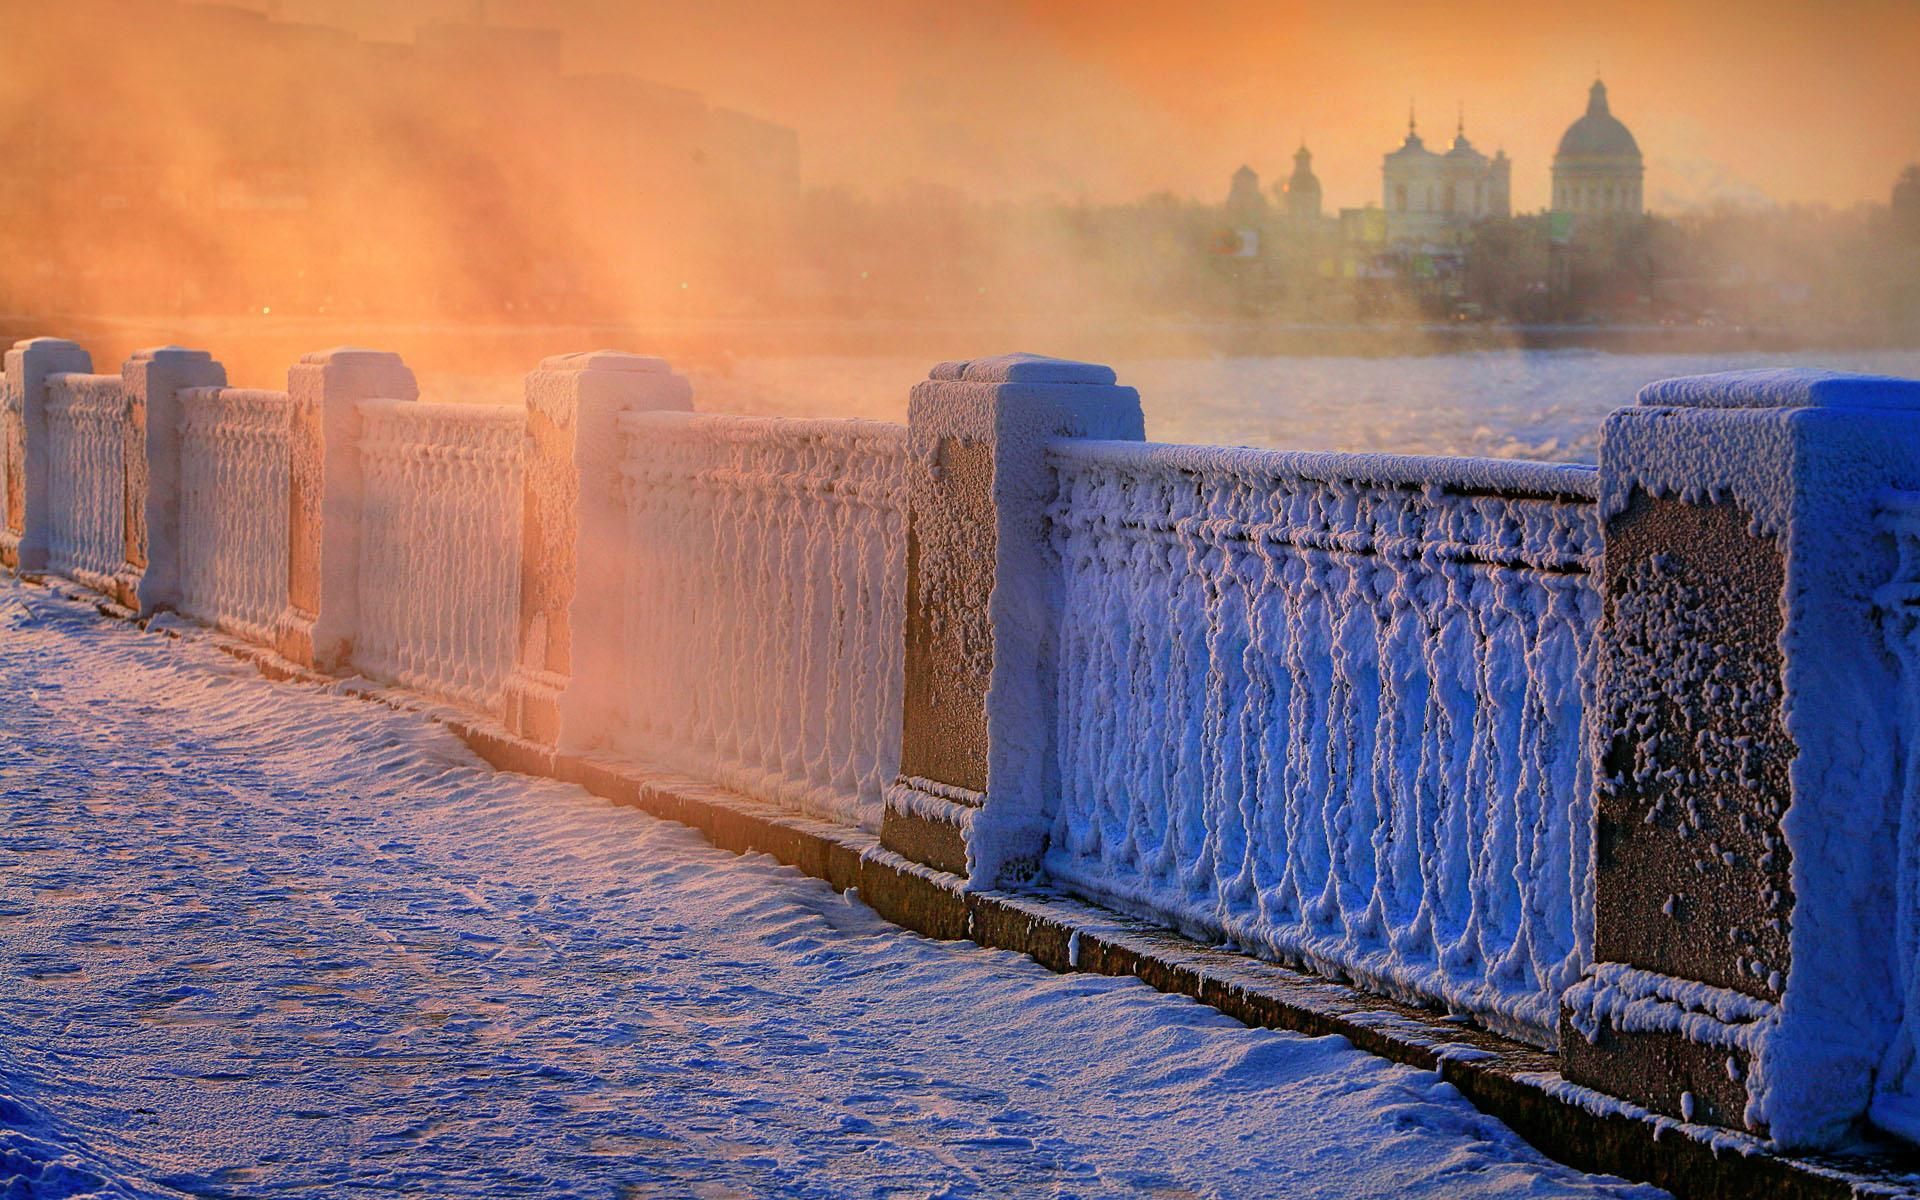 HD Russian Winter Wallpaper. Winter picture, St petersburg, Petersburg